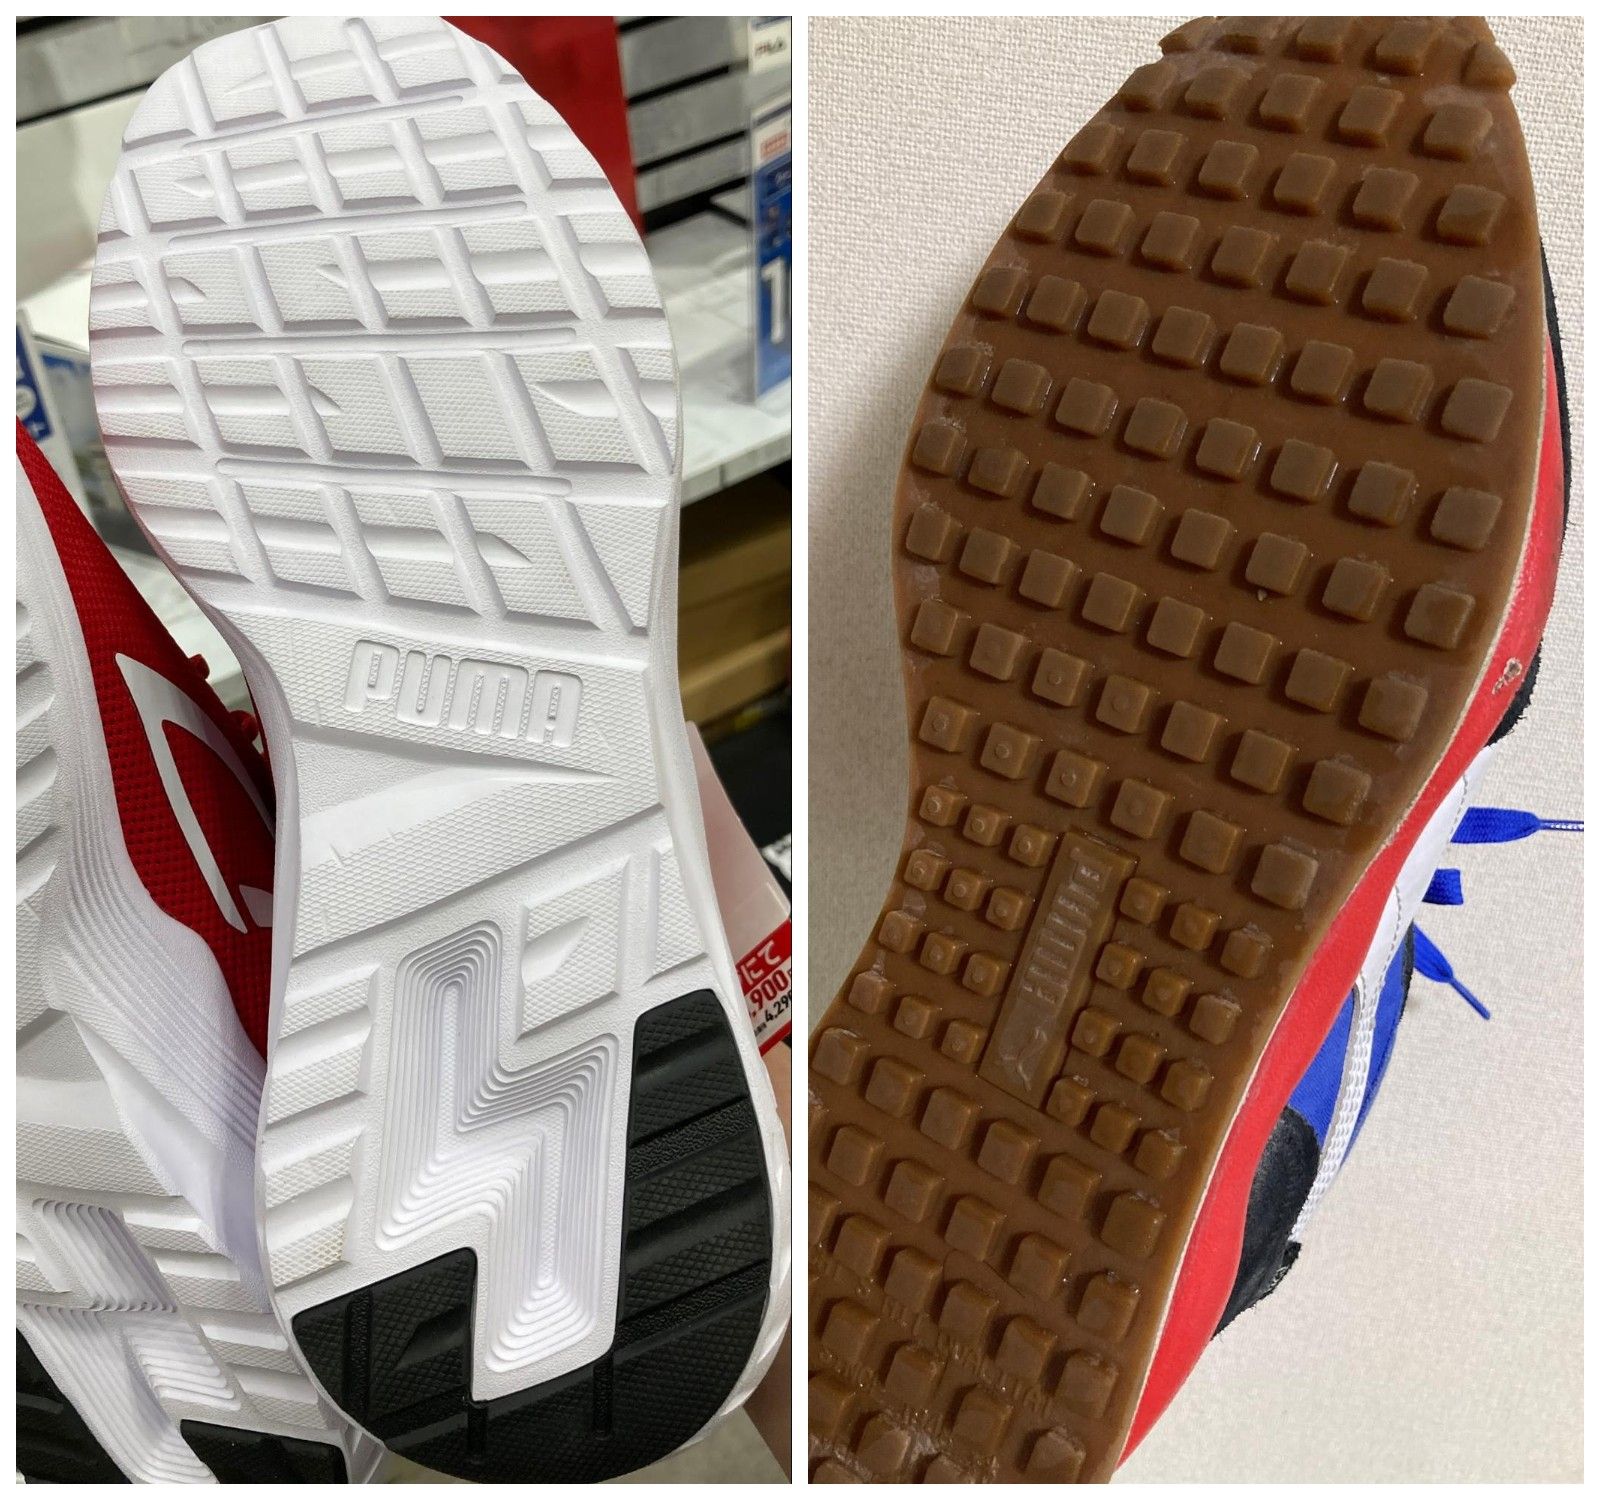 エントリーモデルの「ALL-DAY ACTIVE」（左）は靴底のほとんどがEVA、上位モデルの「STYLE RIDER PLAY ON」（右）は靴底の全面にゴムが貼られている